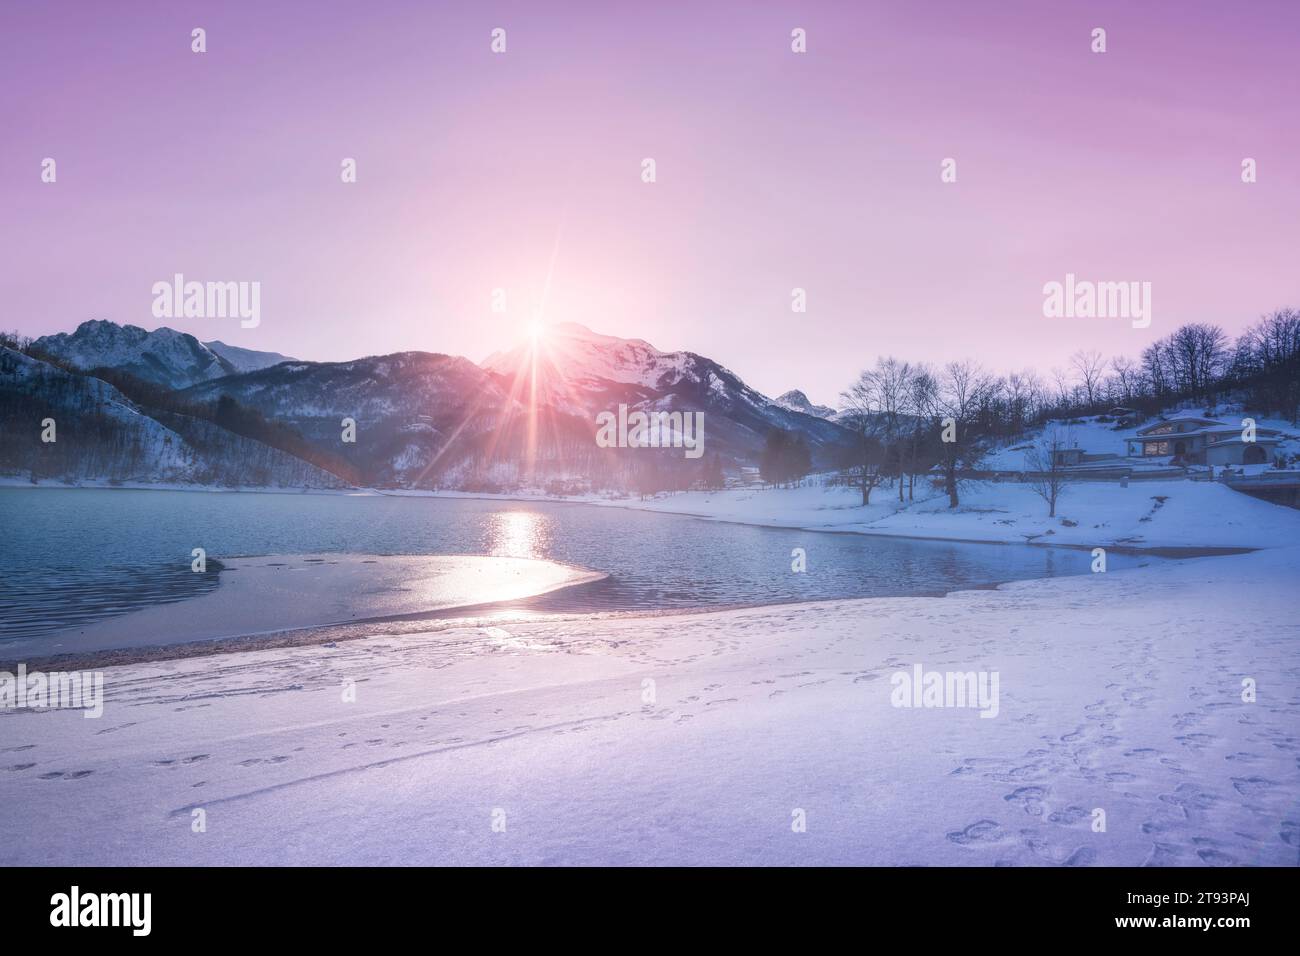 Lago Gramolazzo e neve sulle montagne Apuane in inverno al tramonto. L'ultima luce del giorno. Garfagnana, regione Toscana, Italia, Europa. Foto Stock